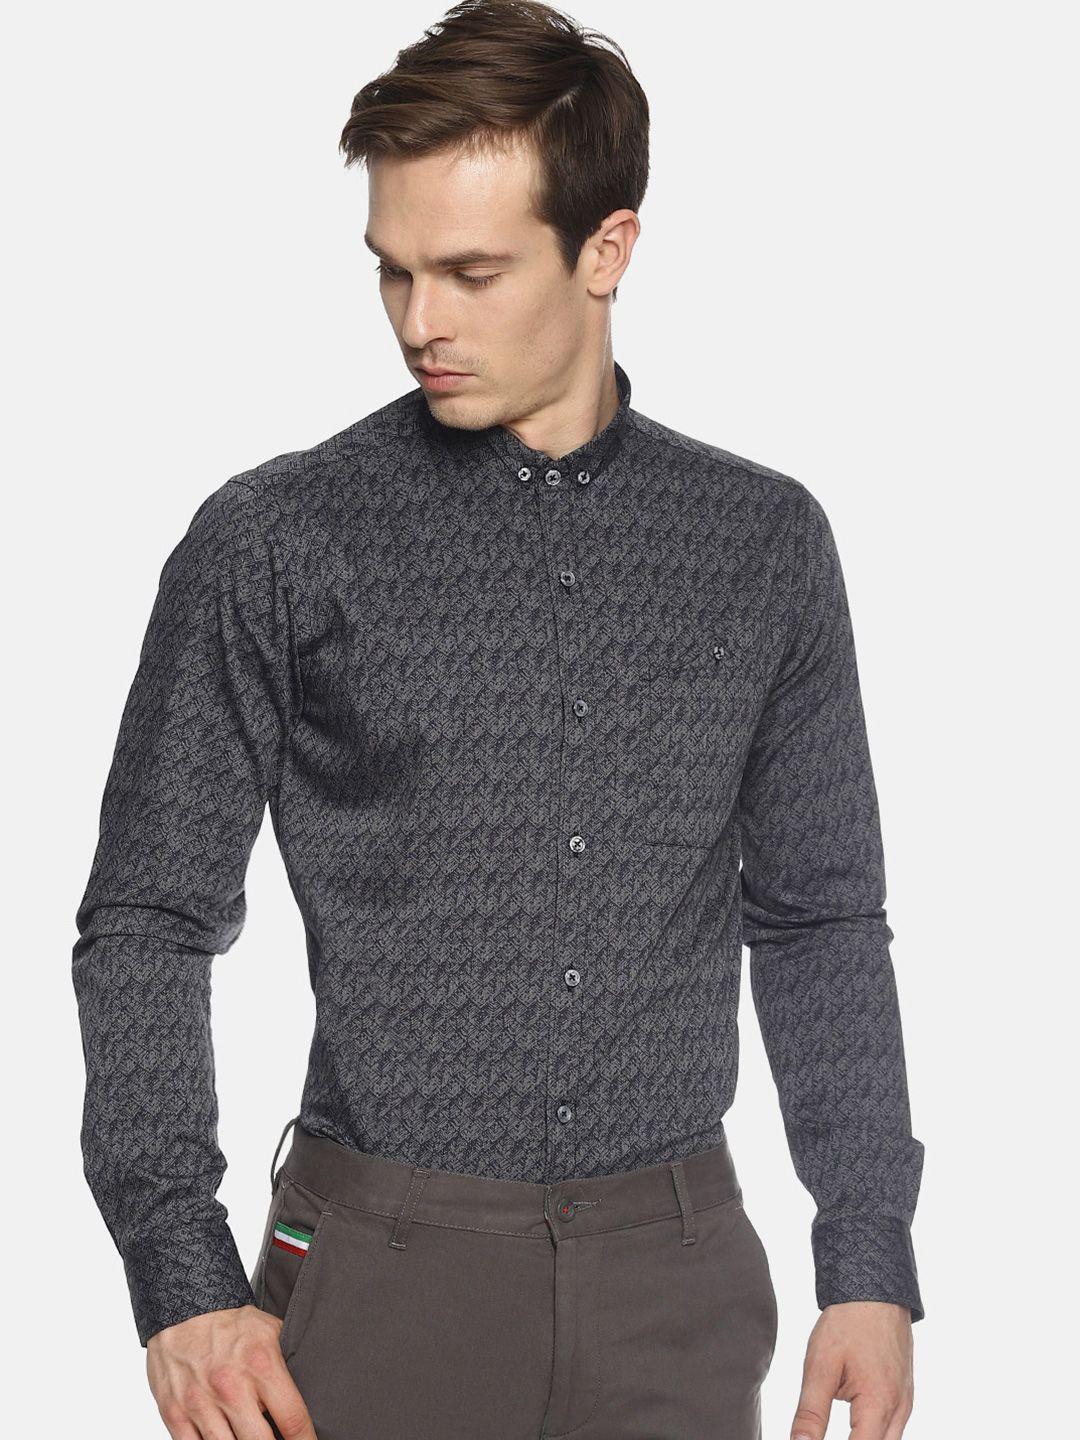 couper-&-coll-men-grey-premium-slim-fit-printed-casual-shirt